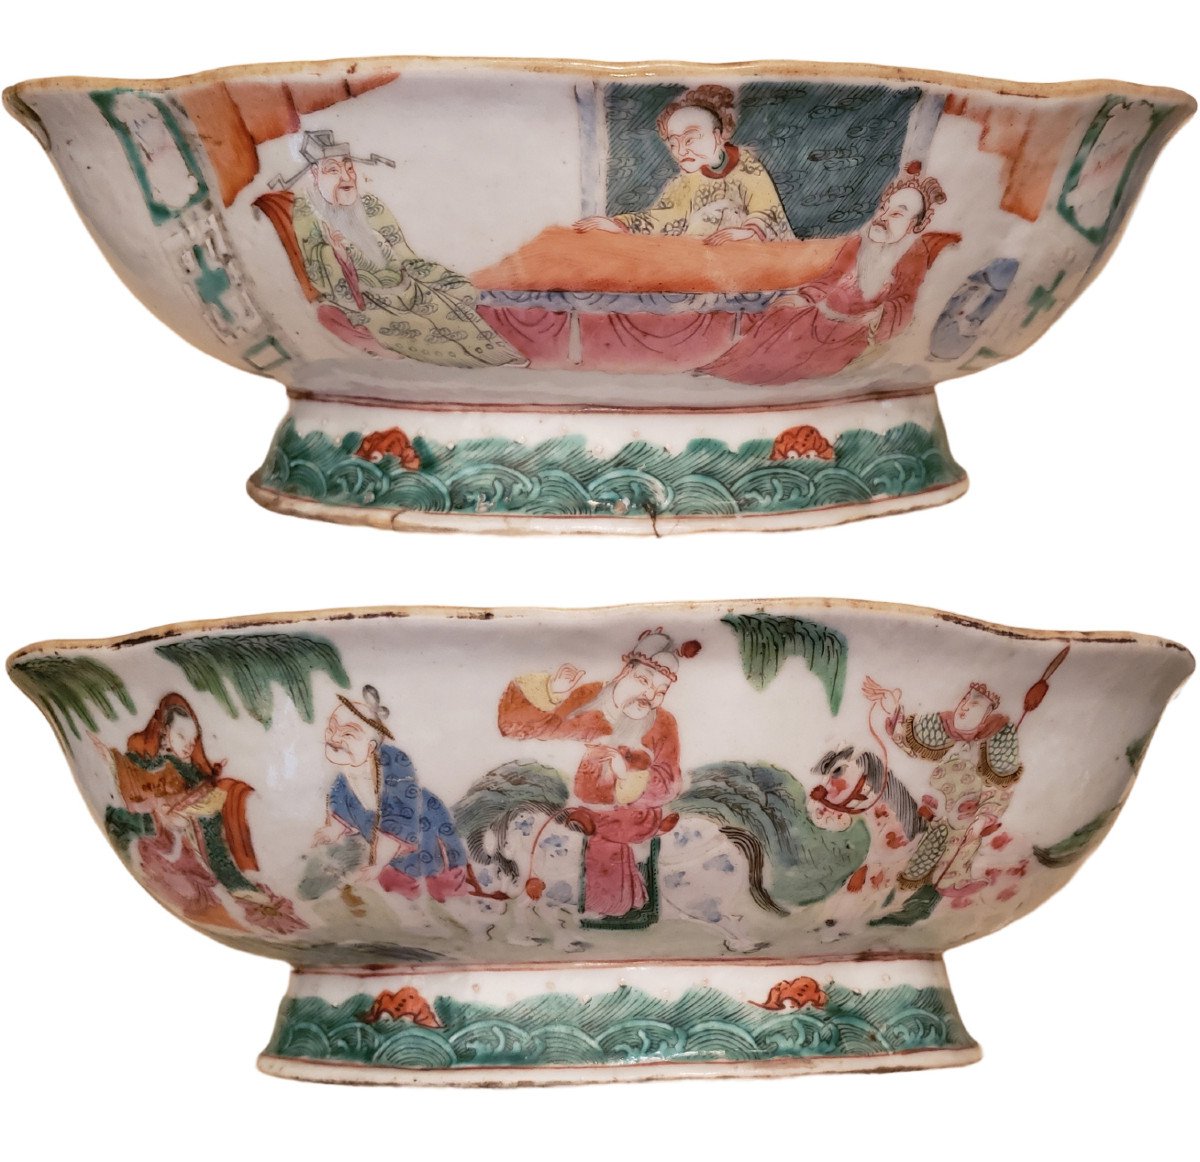 Chinese Porcelain Offering Bowl Famille Verte